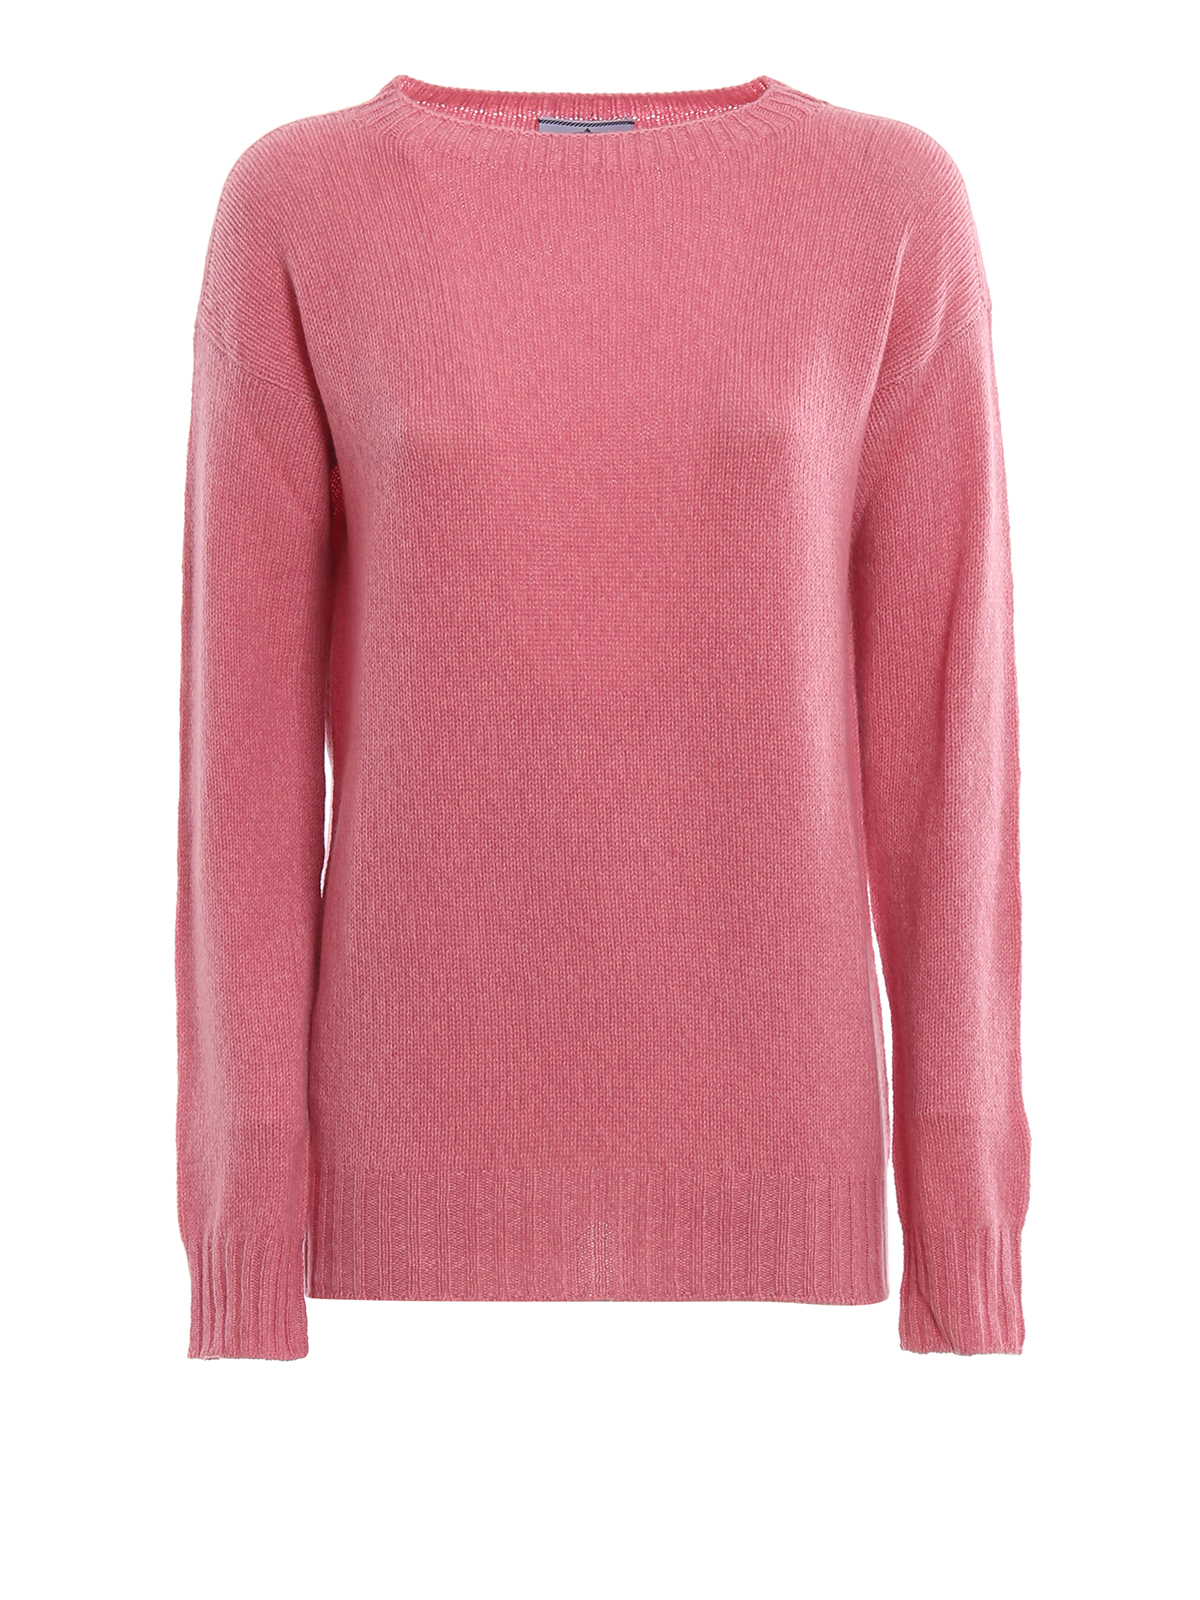 Prada Soft Cashmere Sweater In Dark Pink | ModeSens